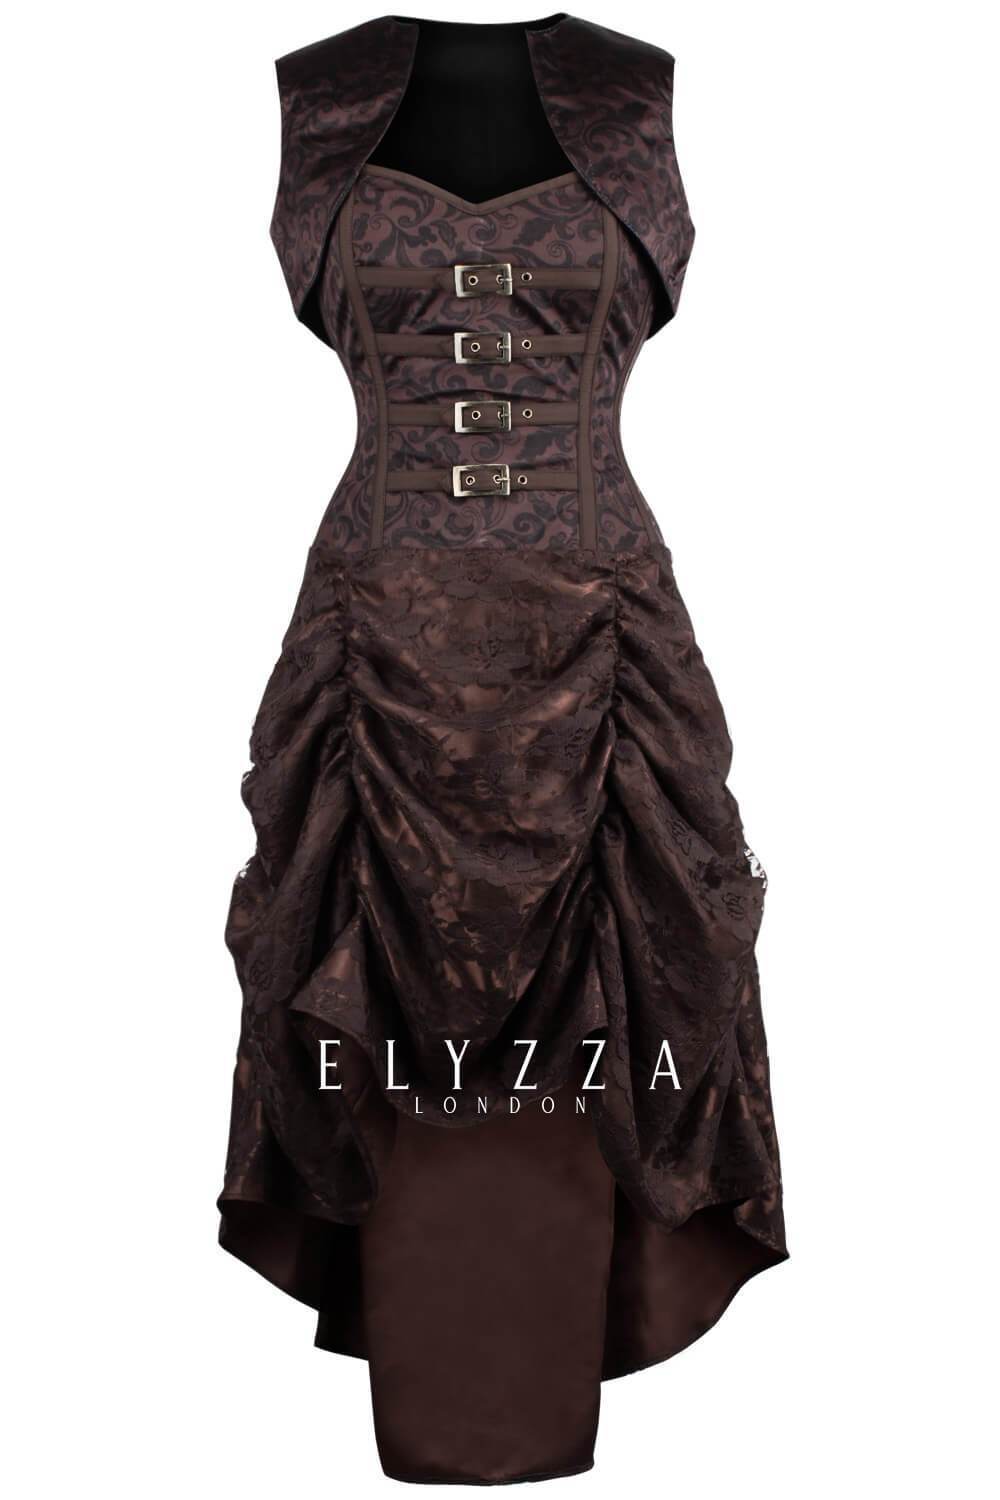 https://www.corsetdeal.com/cdn/shop/products/EL-329_F_Elyzza_London_Corset_Corsetdeal_Bespoke_Corset_waist_training_corset1_48a70de3-f183-4616-9f1c-7029706aac74.jpg?v=1576737051